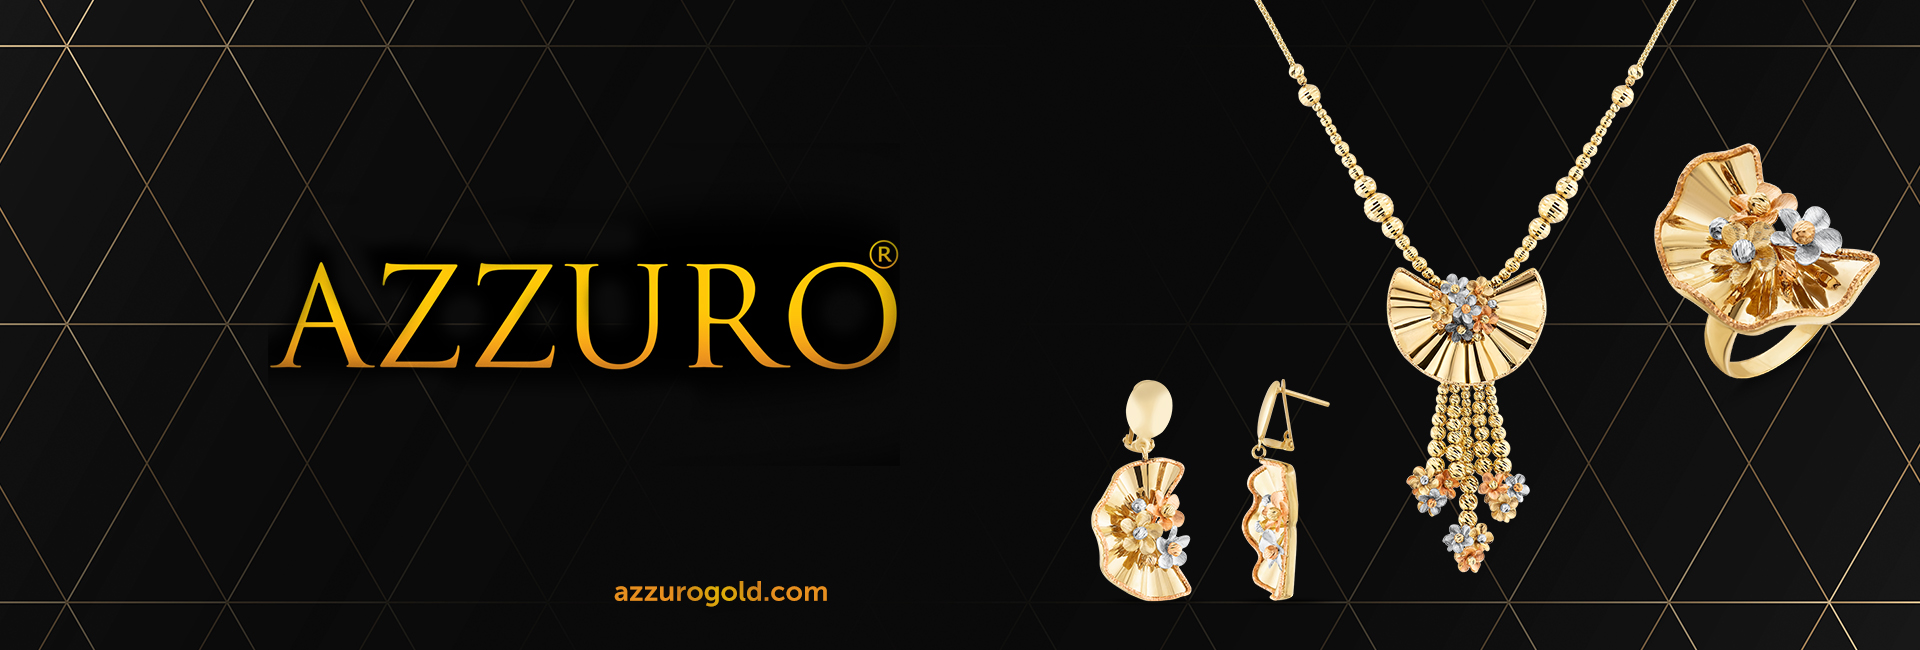 Azzuro Gold